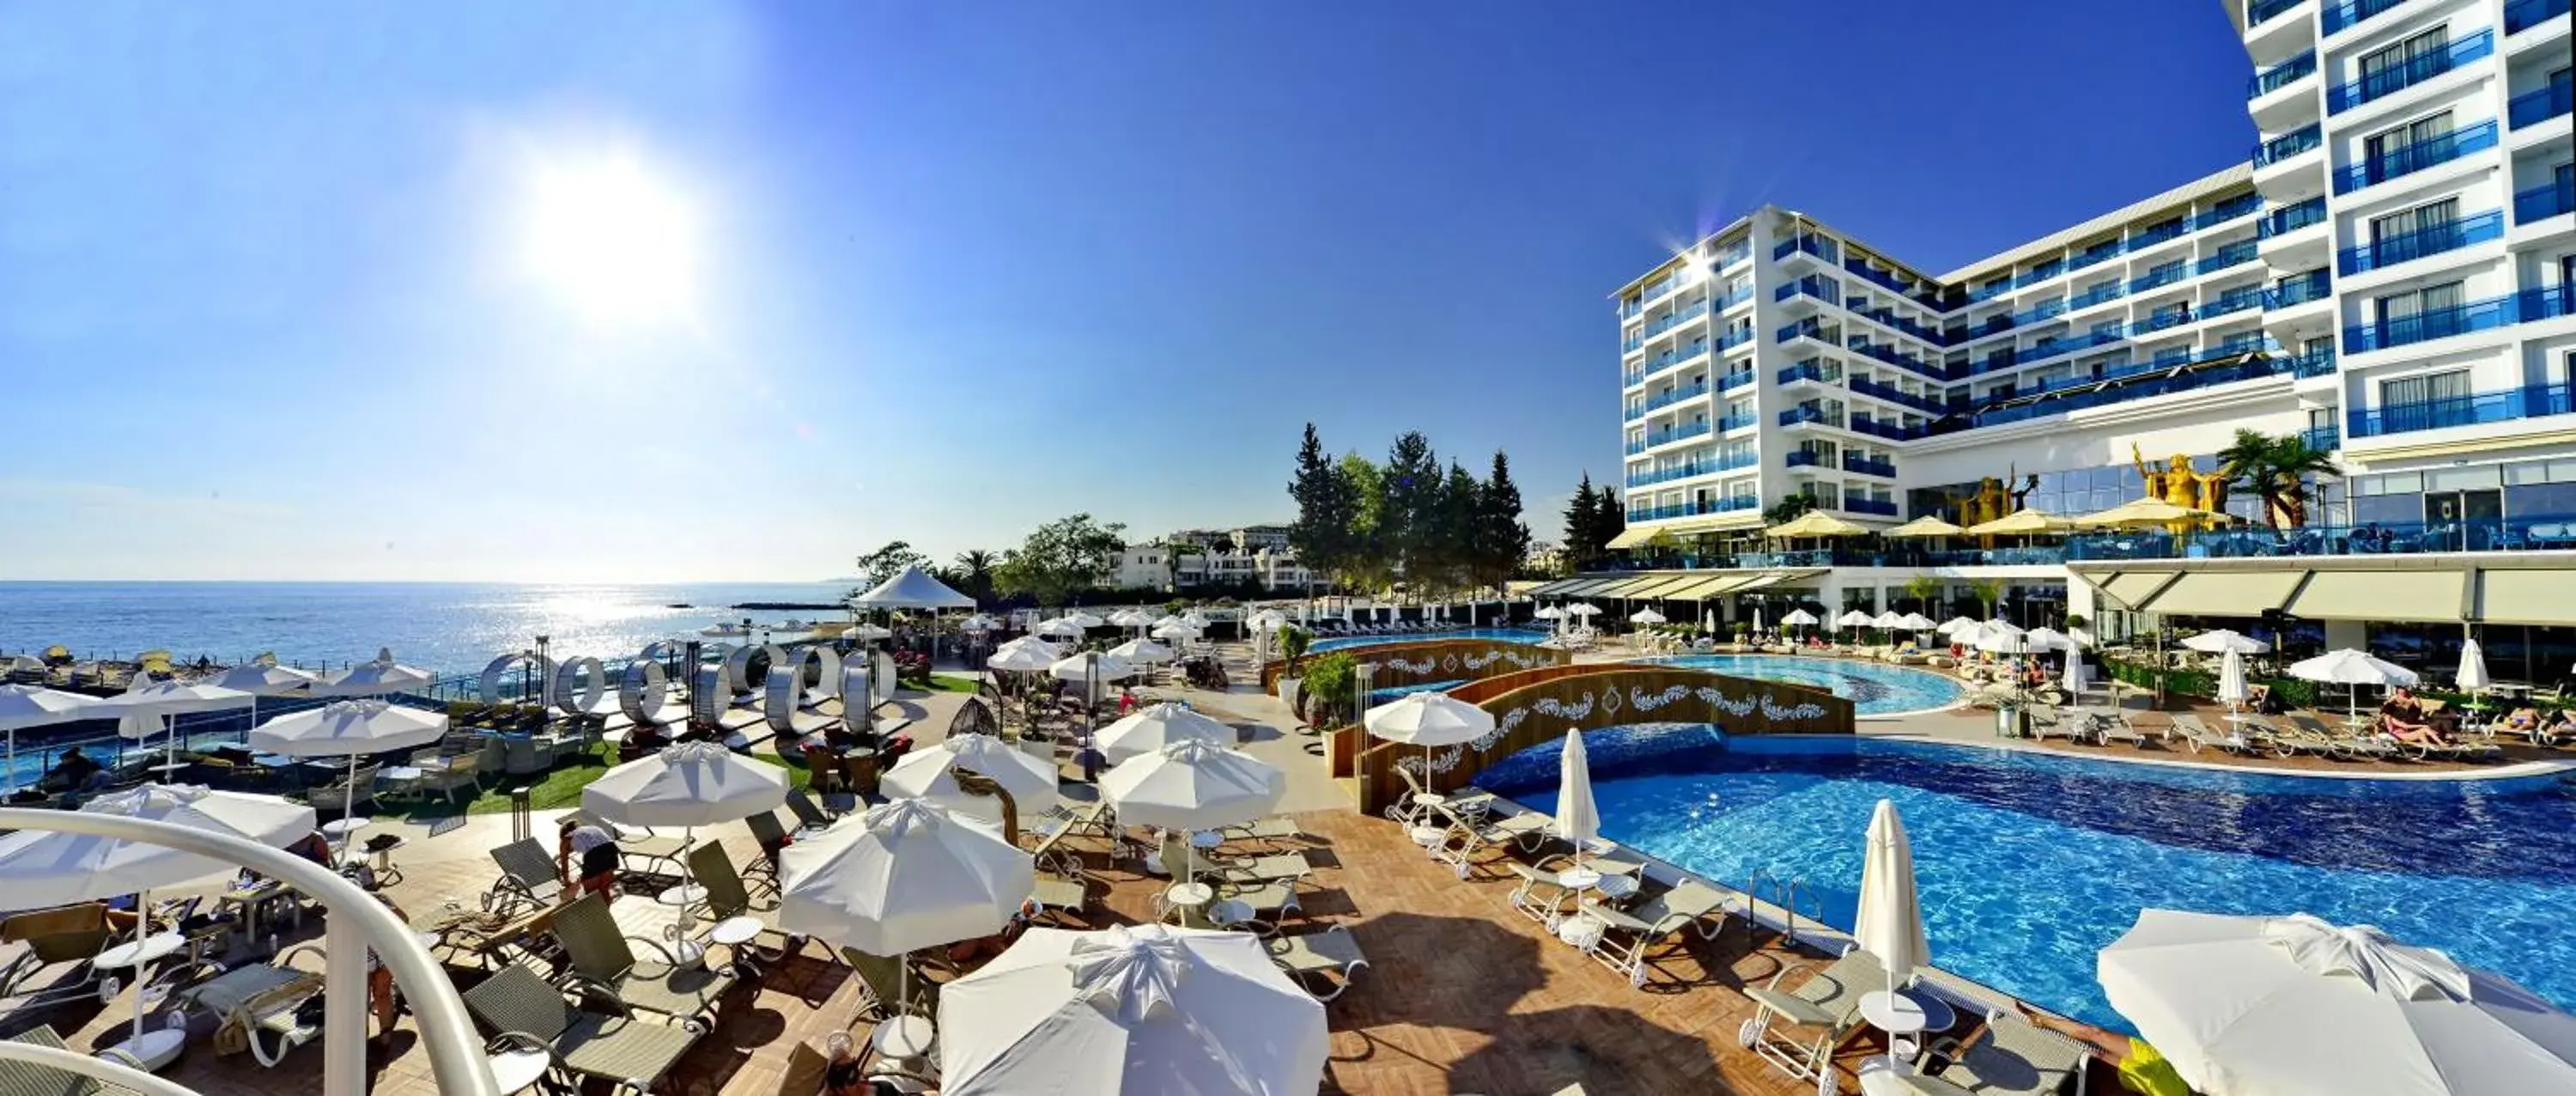 Swimming Pool in Azura Deluxe Resort & Spa - Ultra All Inclusive